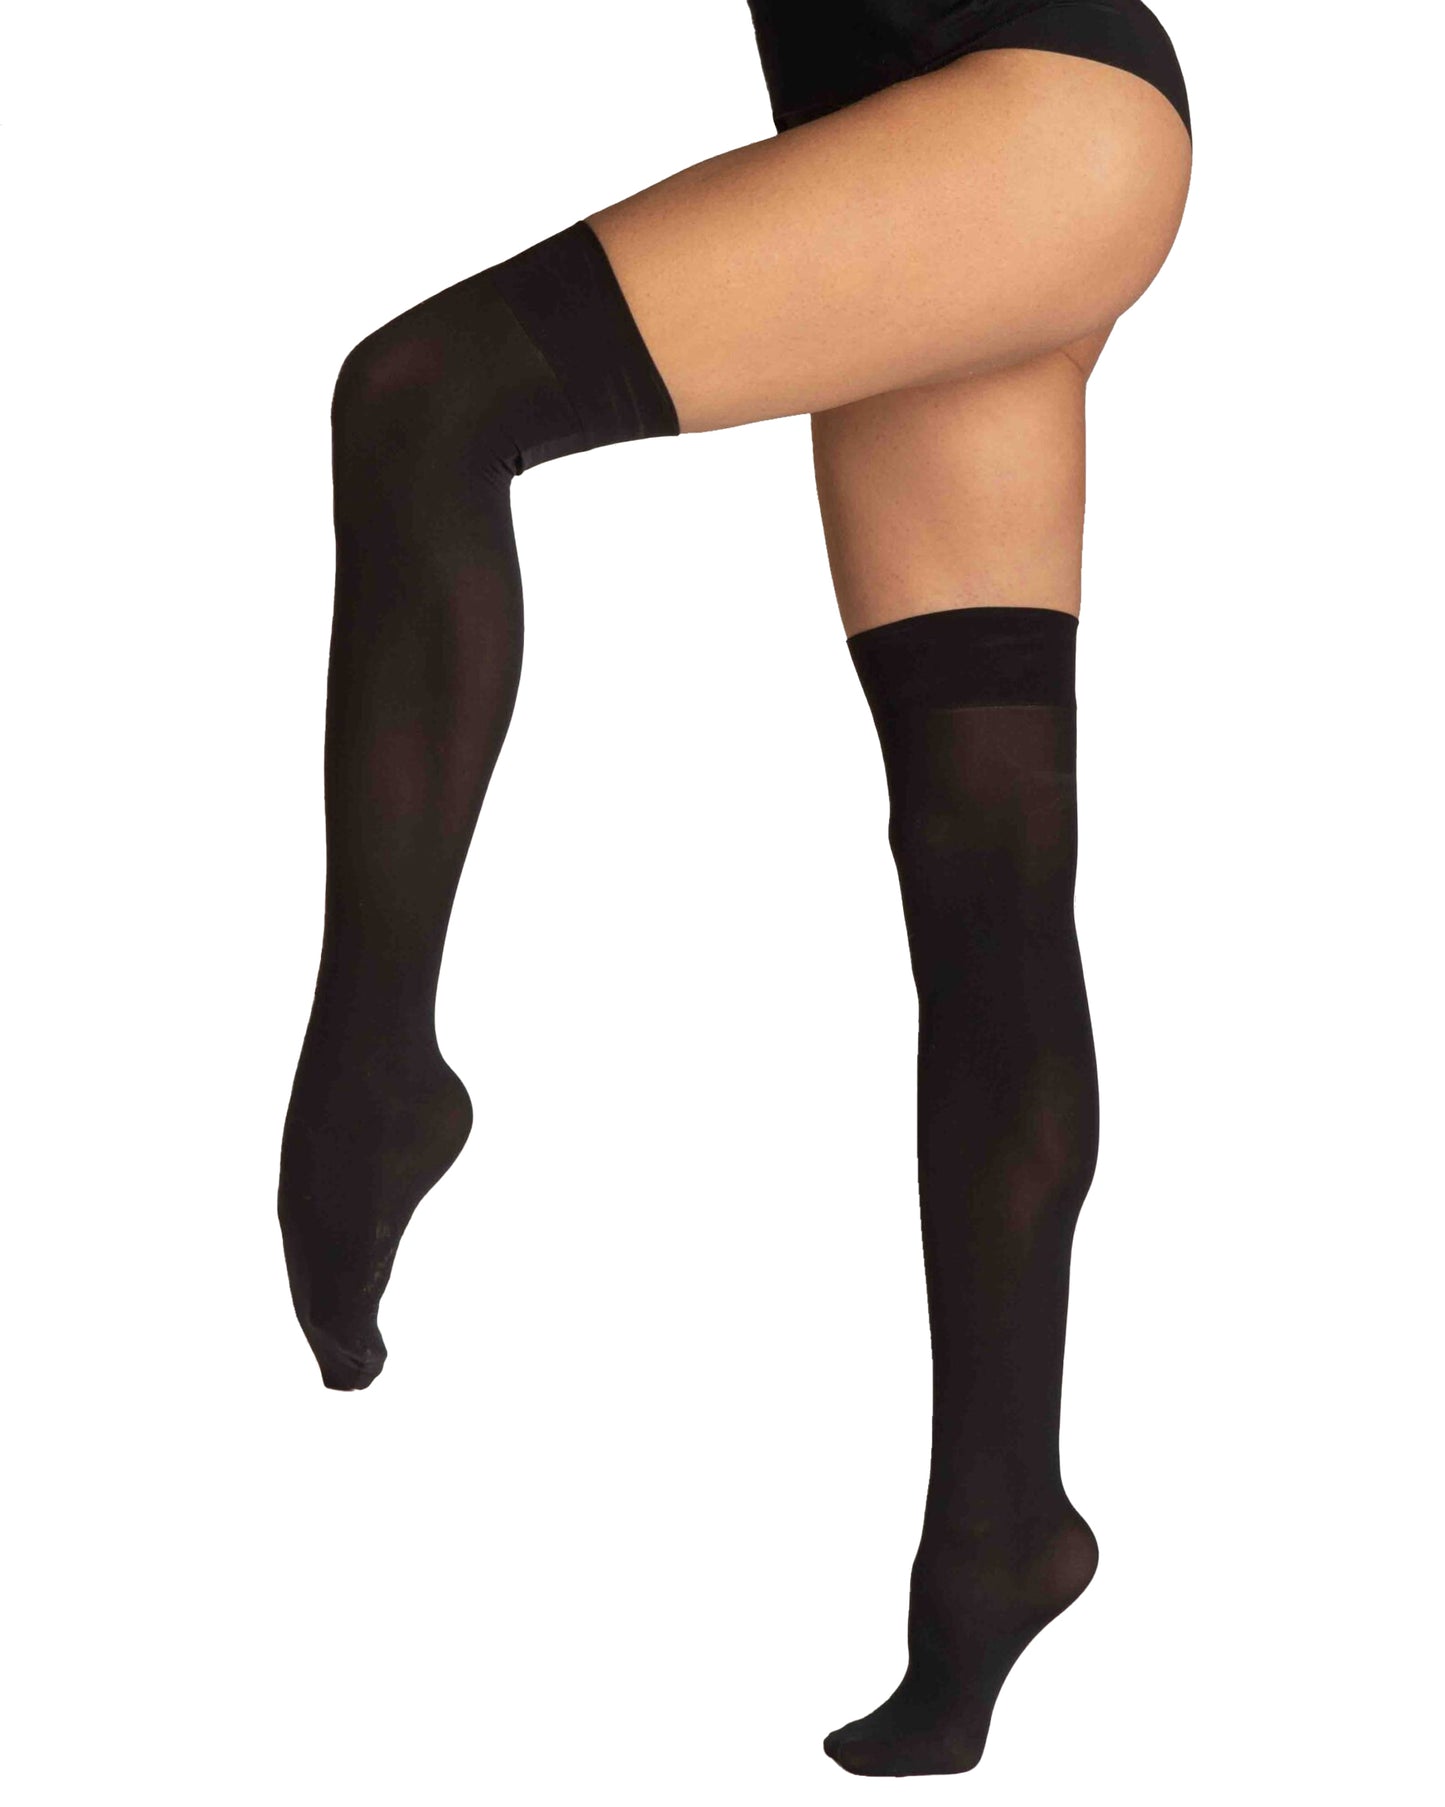 Omero 113752 Aria 50 Parigina - Plain black soft matte opaque over the knee socks with a deep elasticated cuff.